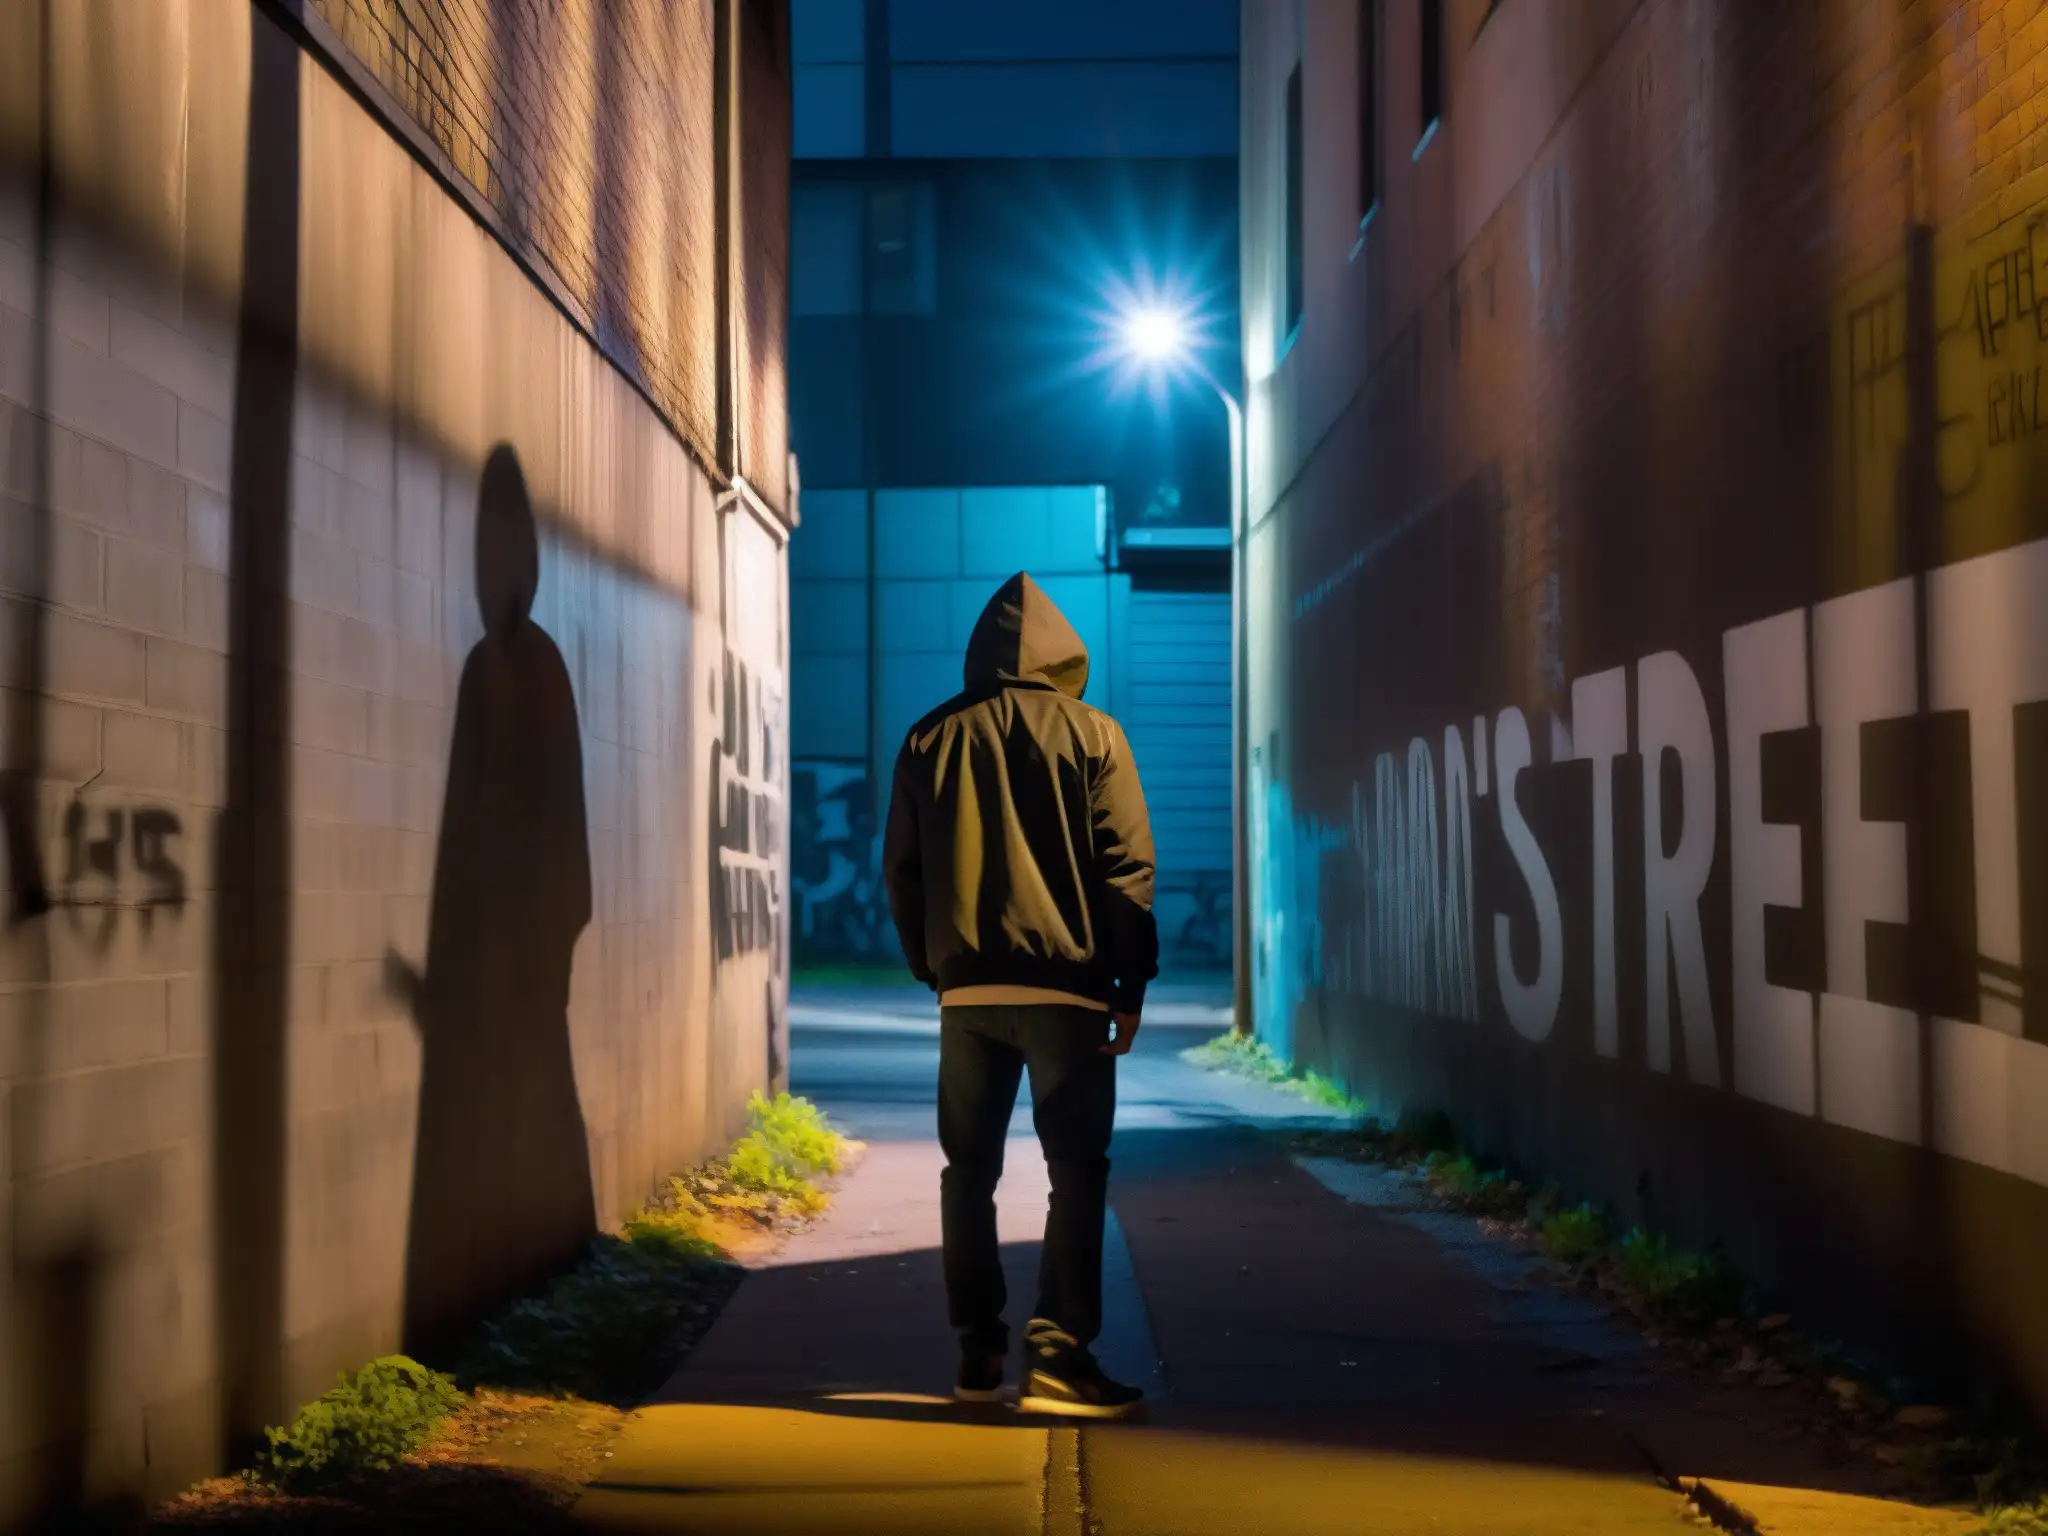 Una misteriosa figura en una oscura calle urbana, con graffiti y una luz tenue, evoca la influencia de leyendas urbanas en justicia